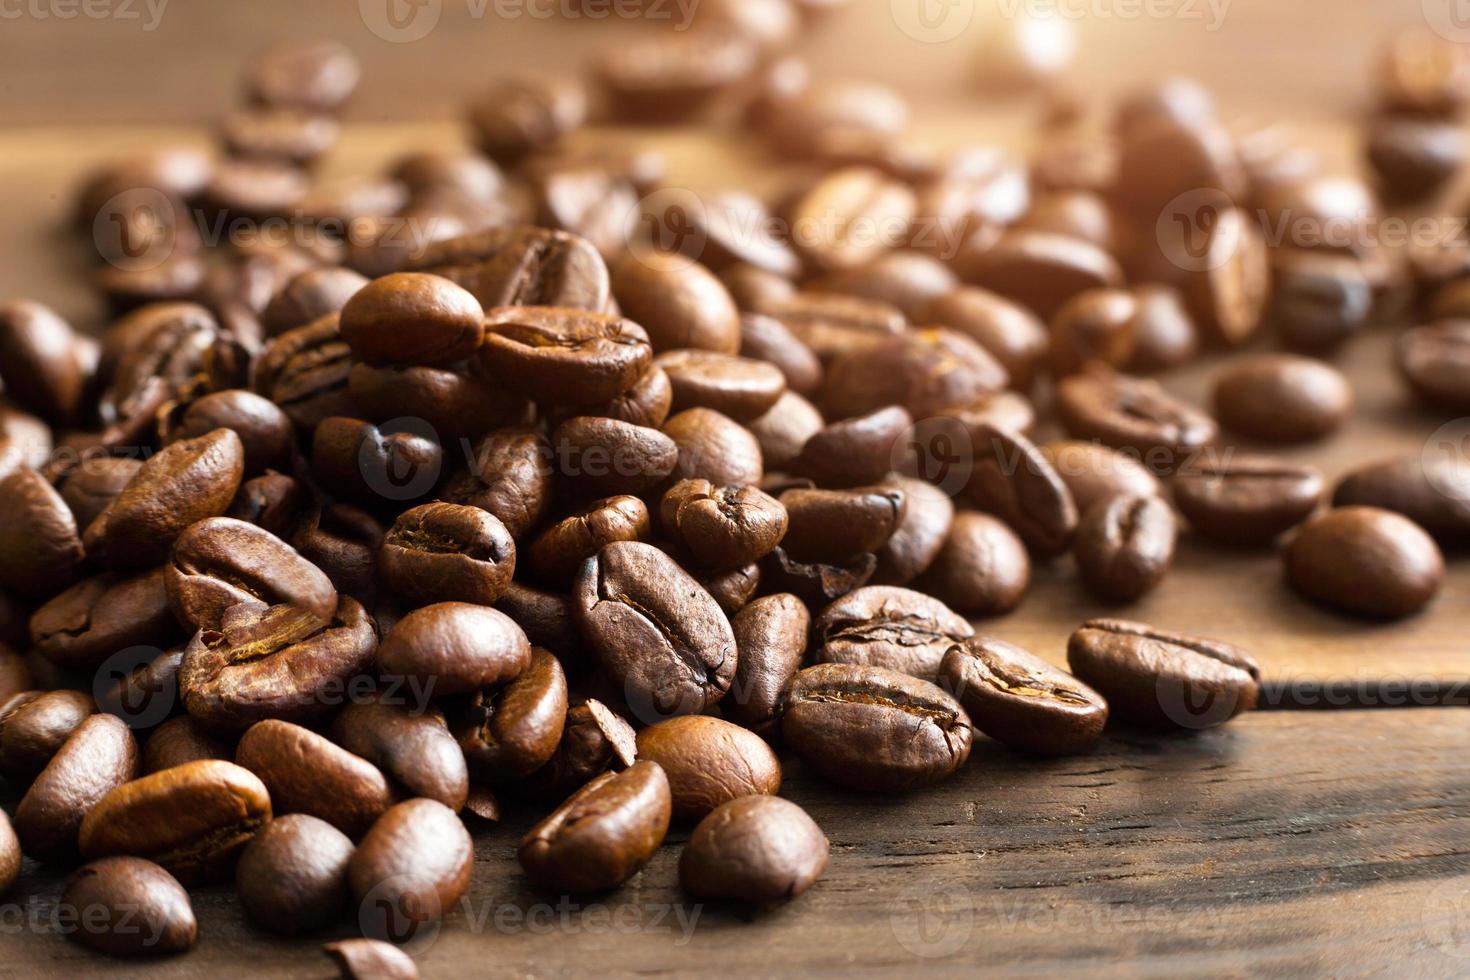 rostade kaffebönor nära - upp-doftande bakgrund. bruna arabica-kaffebönor ligger utspridda på träbordet. kopieringsutrymme foto